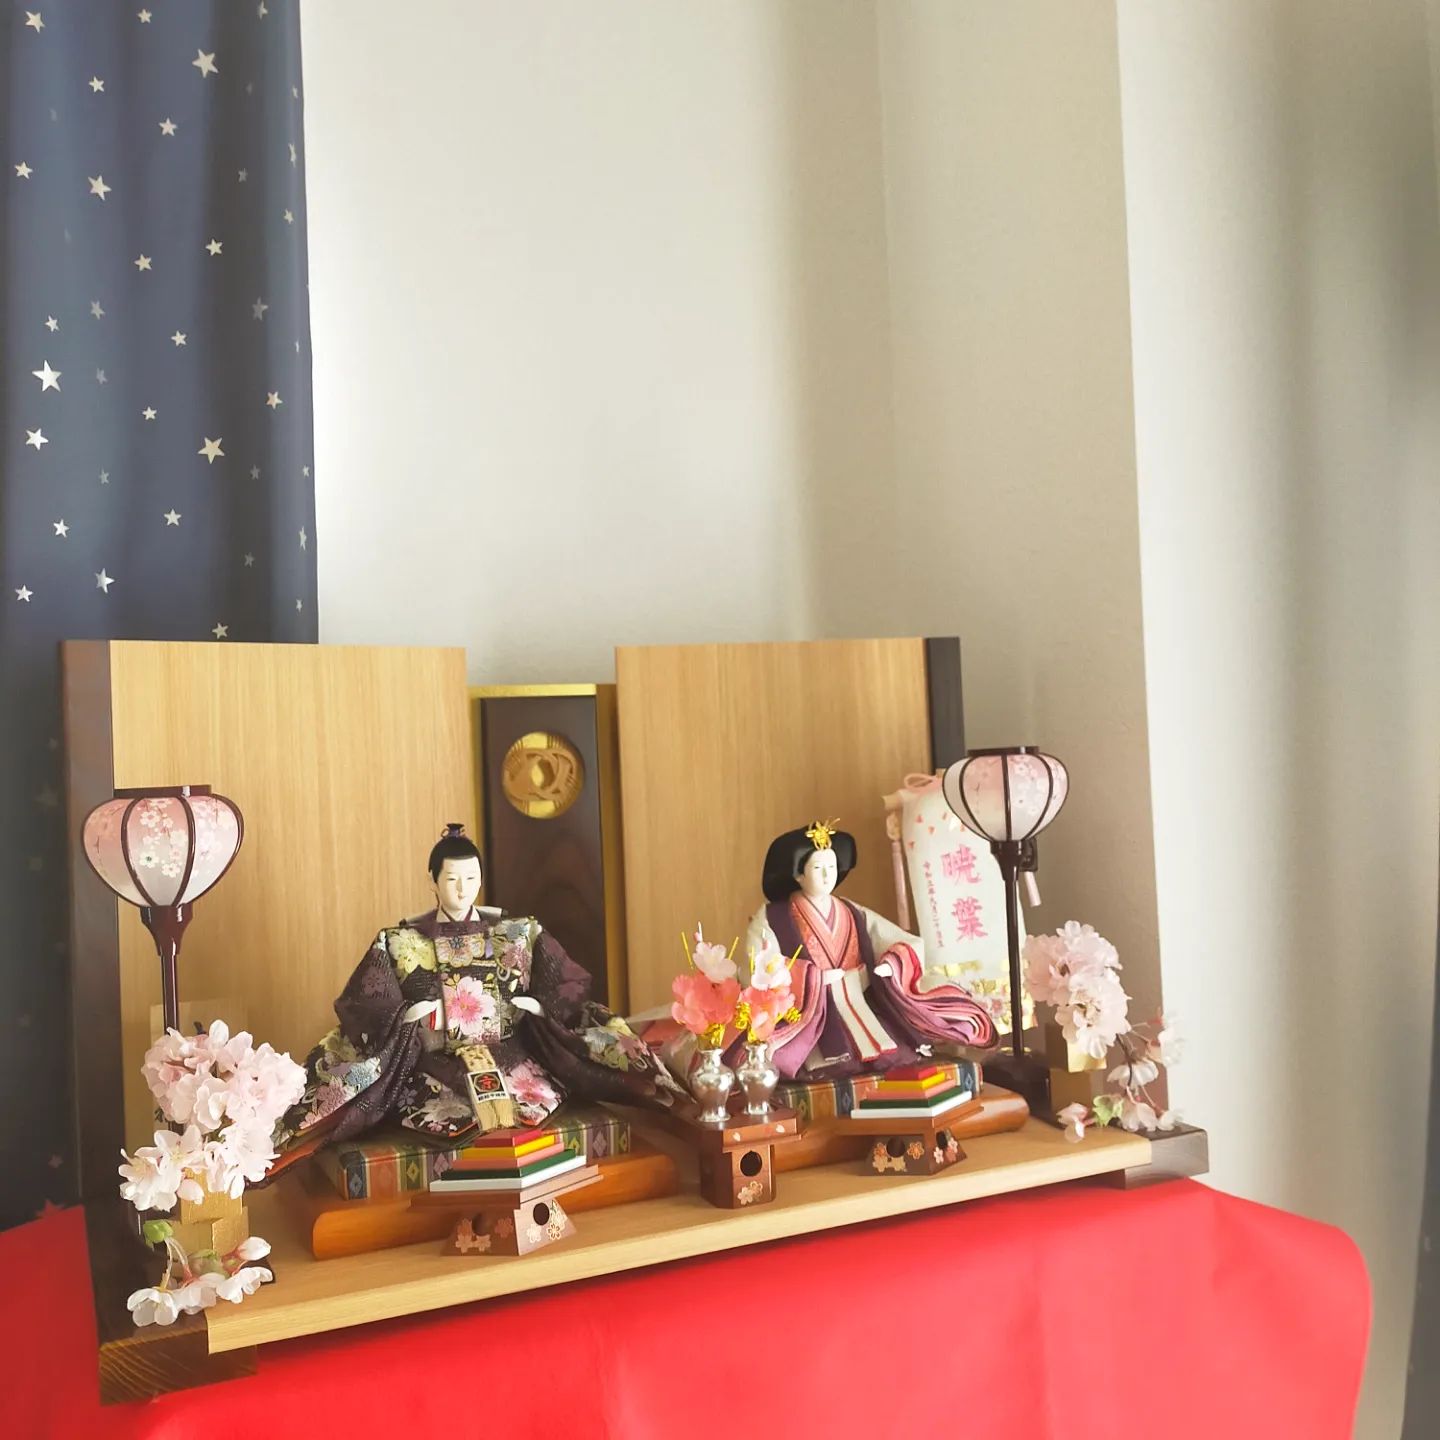 愛知県岡崎市のお客様宅に雛人形を飾り付けいたしました。- from Instagram